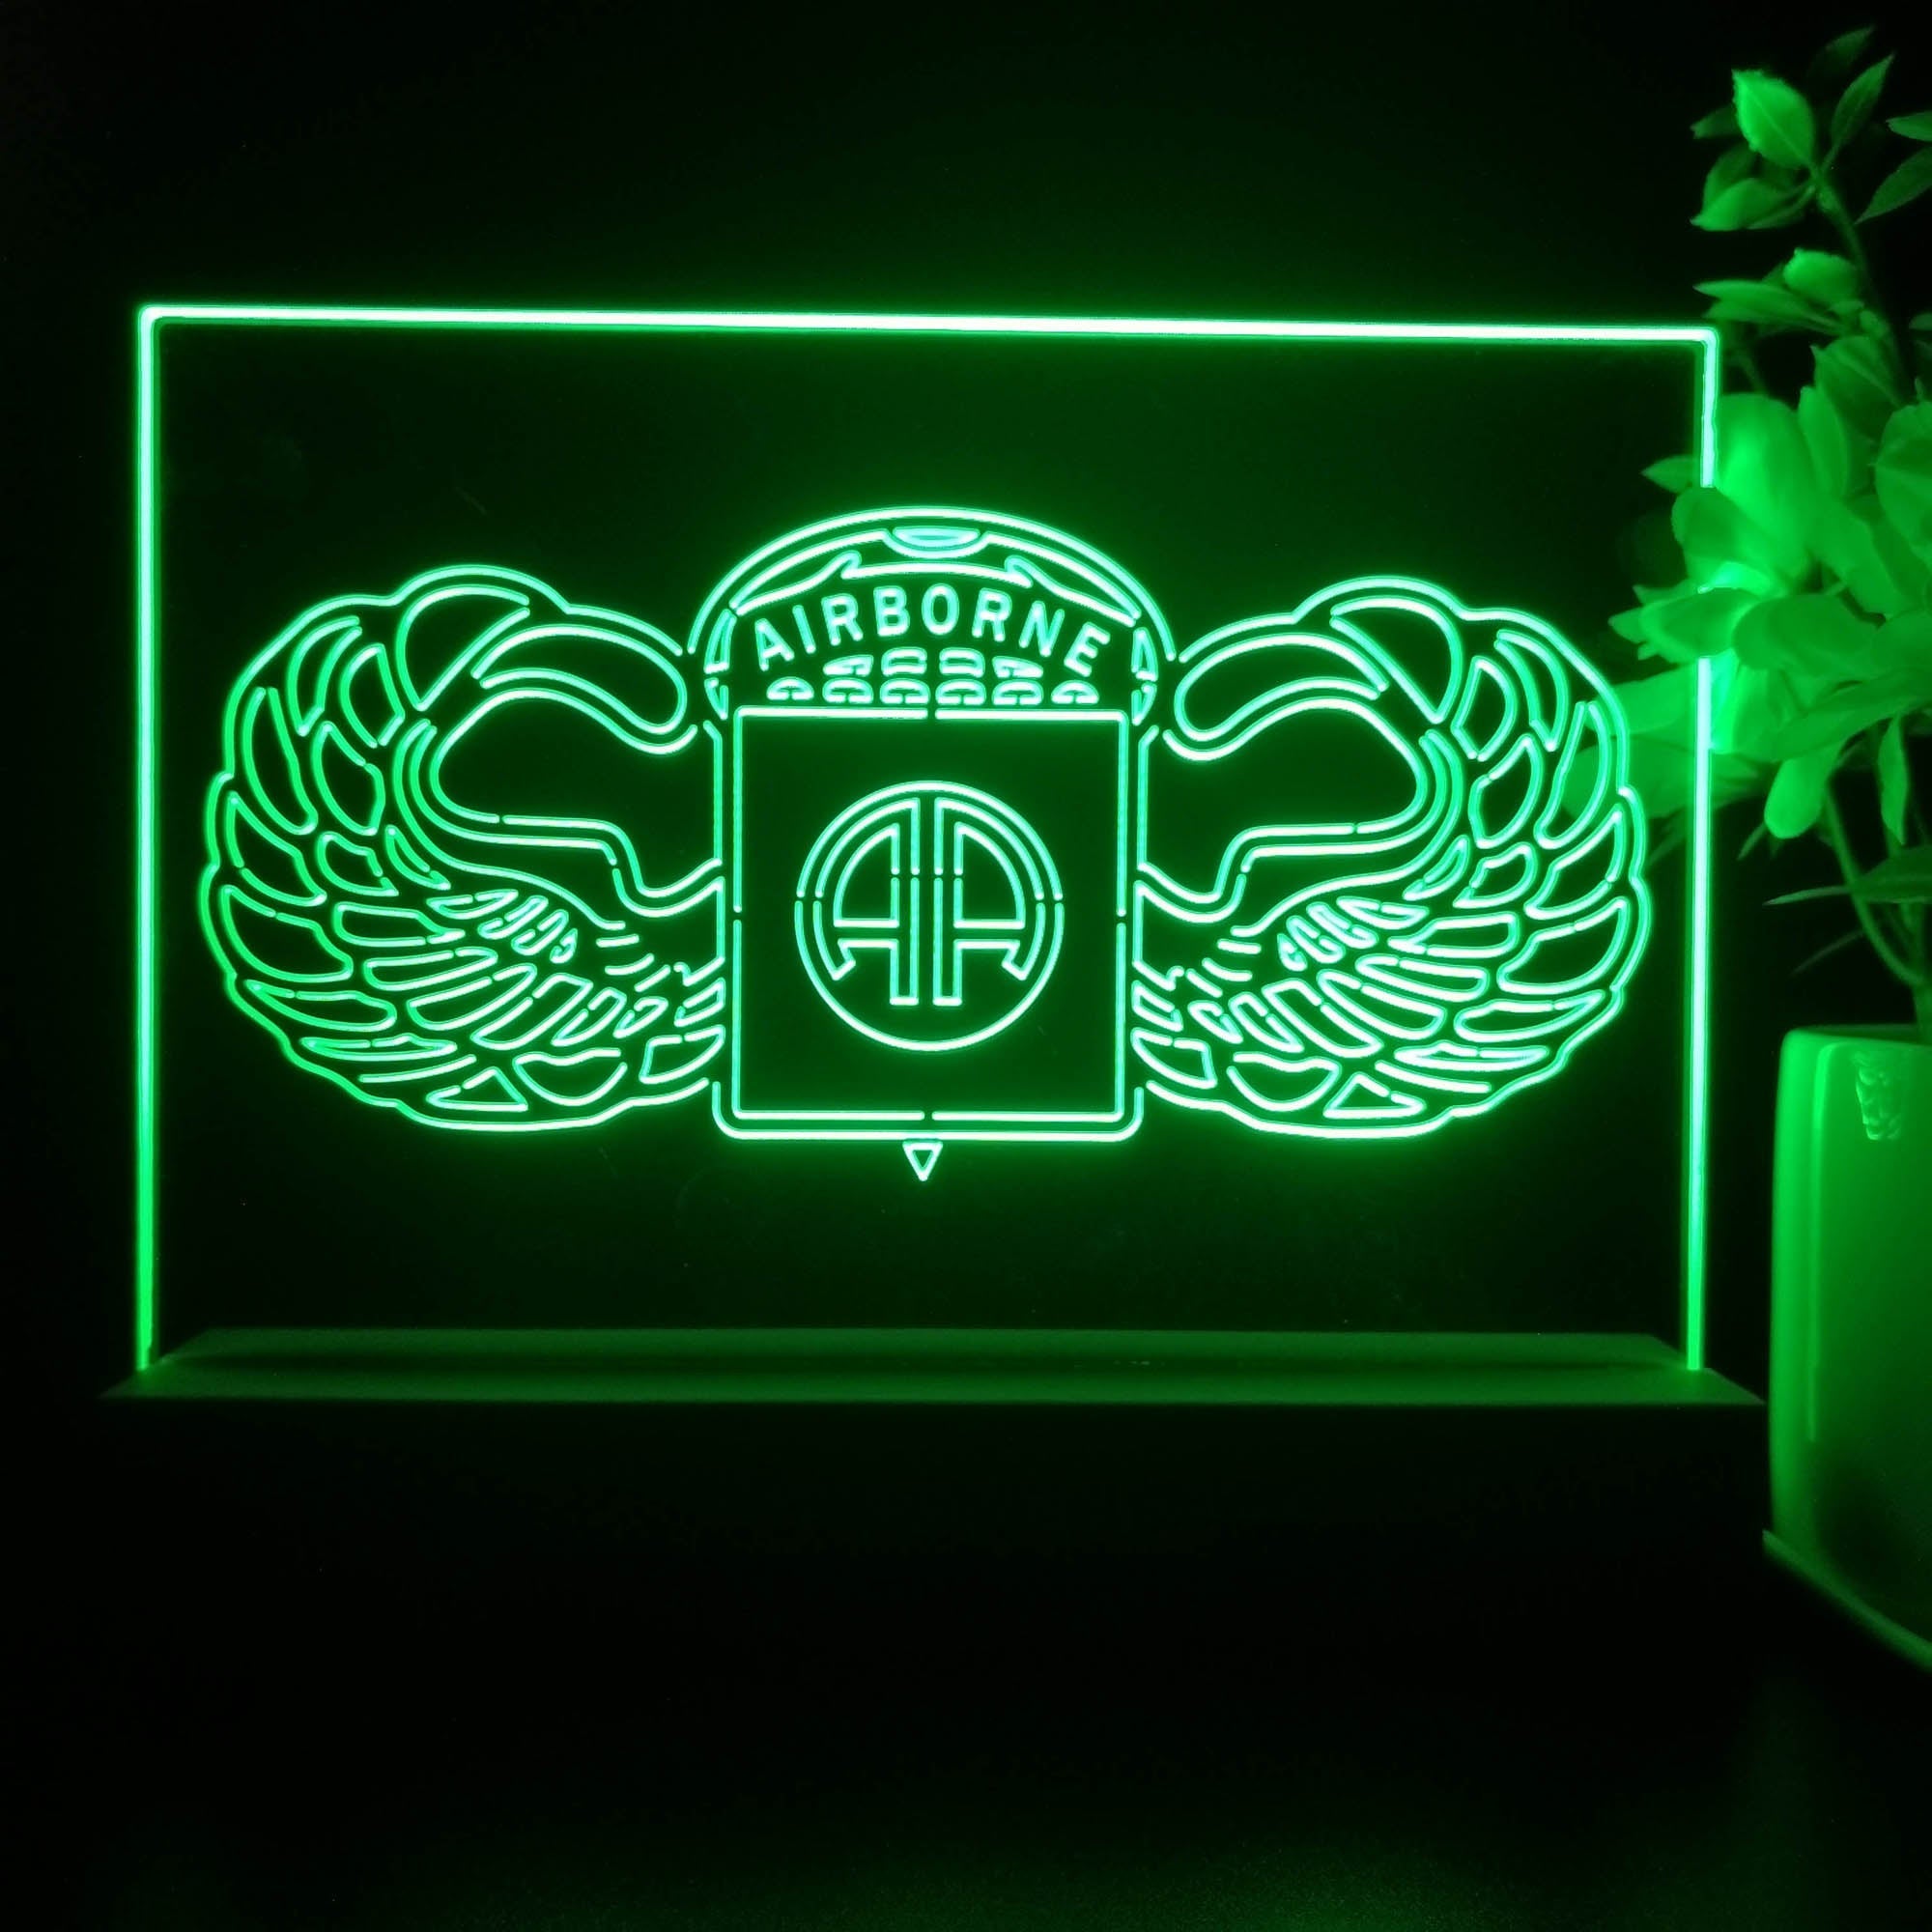 Airborne Division Neon Sign Pub Bar Lamp